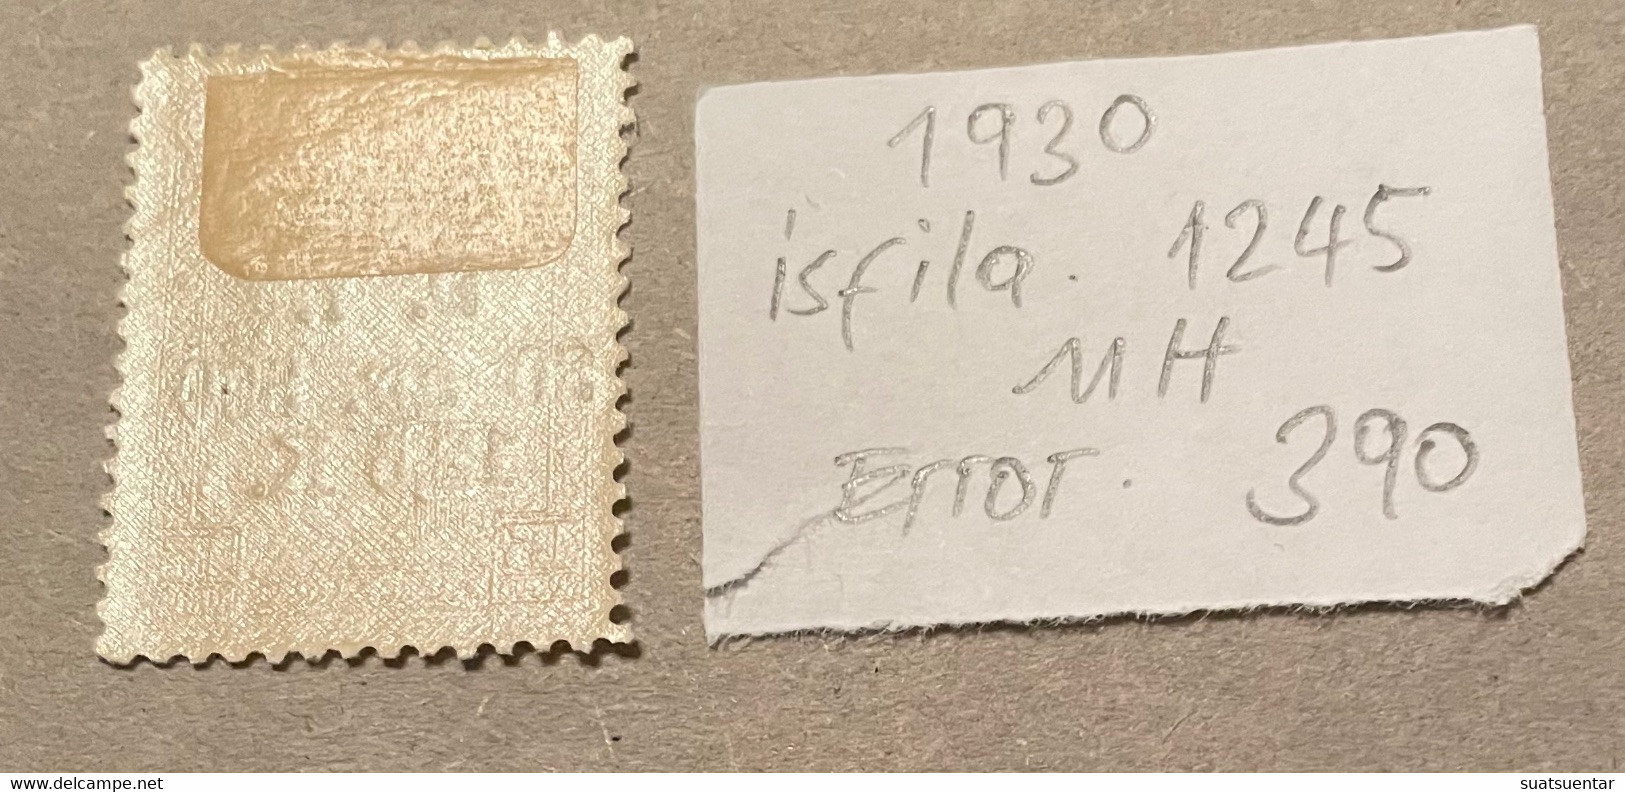 1930 Sivas-Ankara Railway Stamps Error   390 MH Isfila 1245 - Ungebraucht